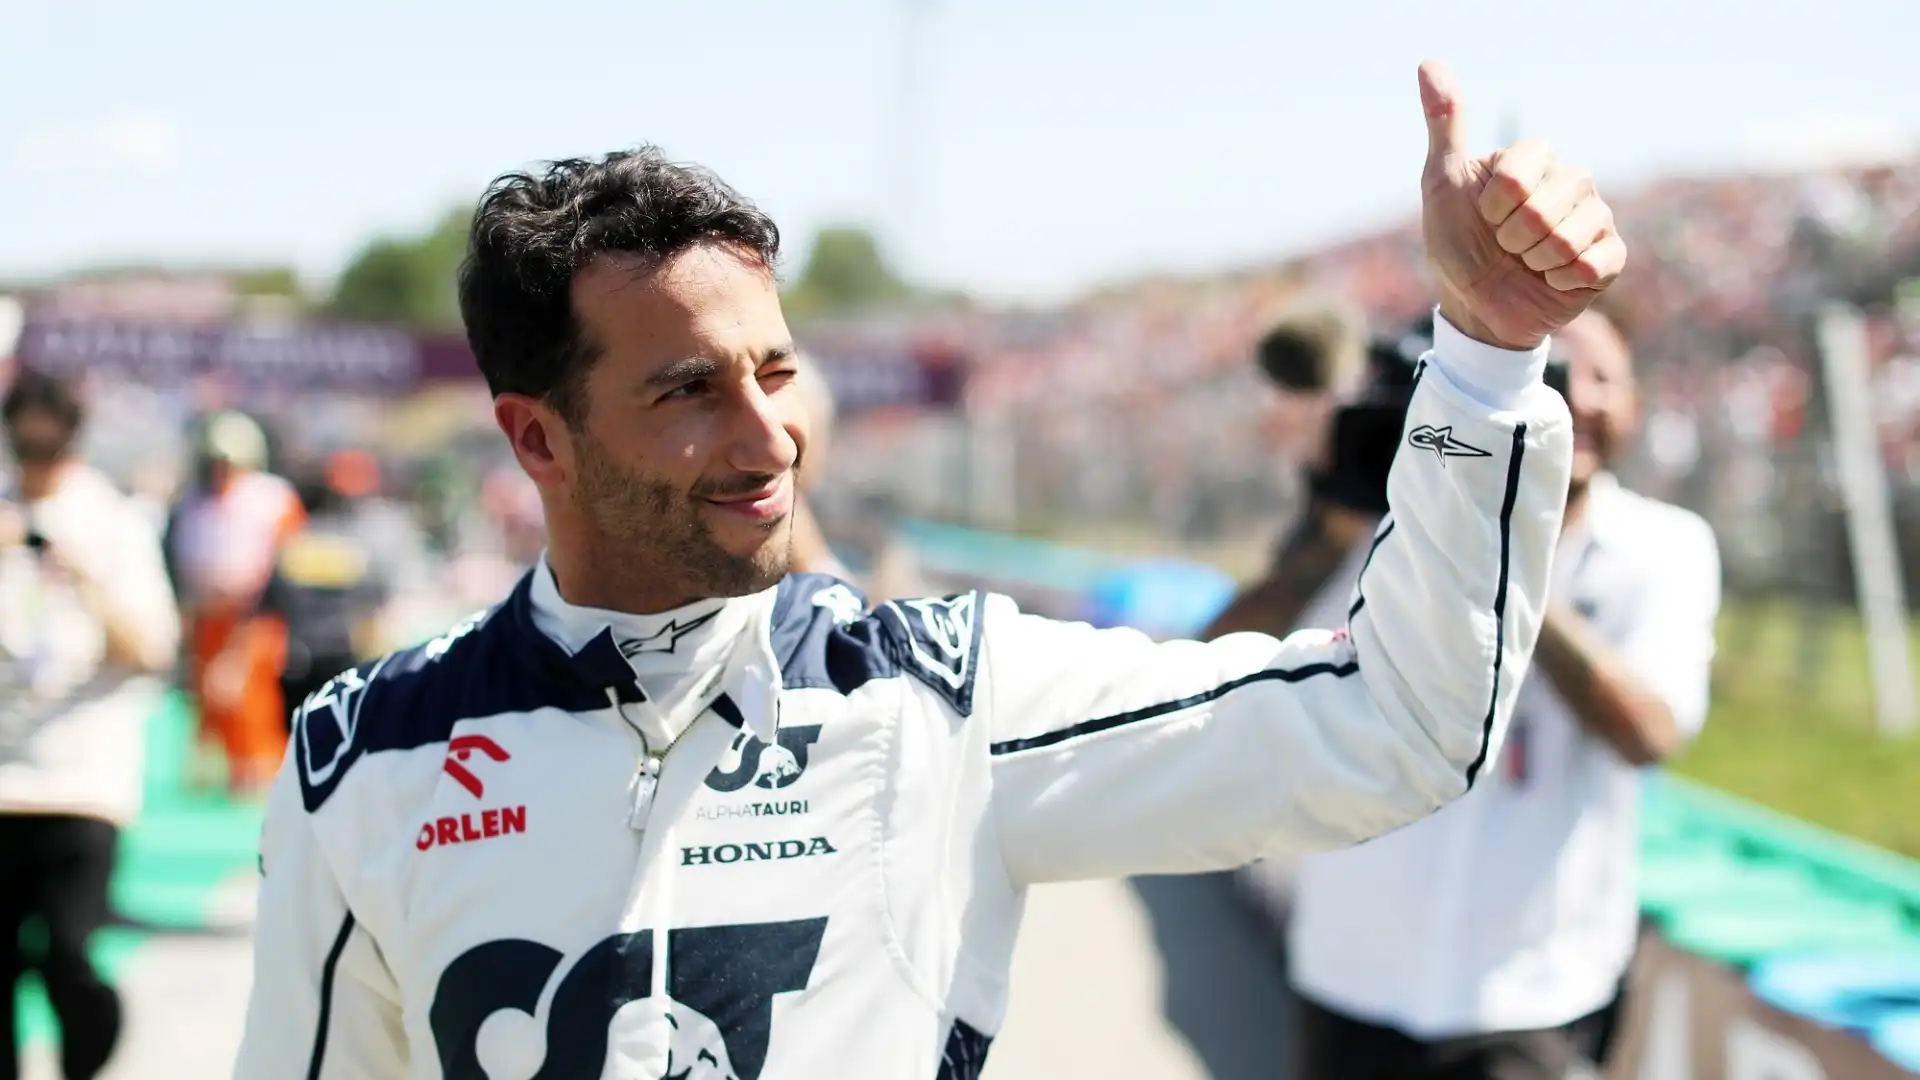 Christian Horner spaventa Sergio Perez: “Ricciardo eccezionale”